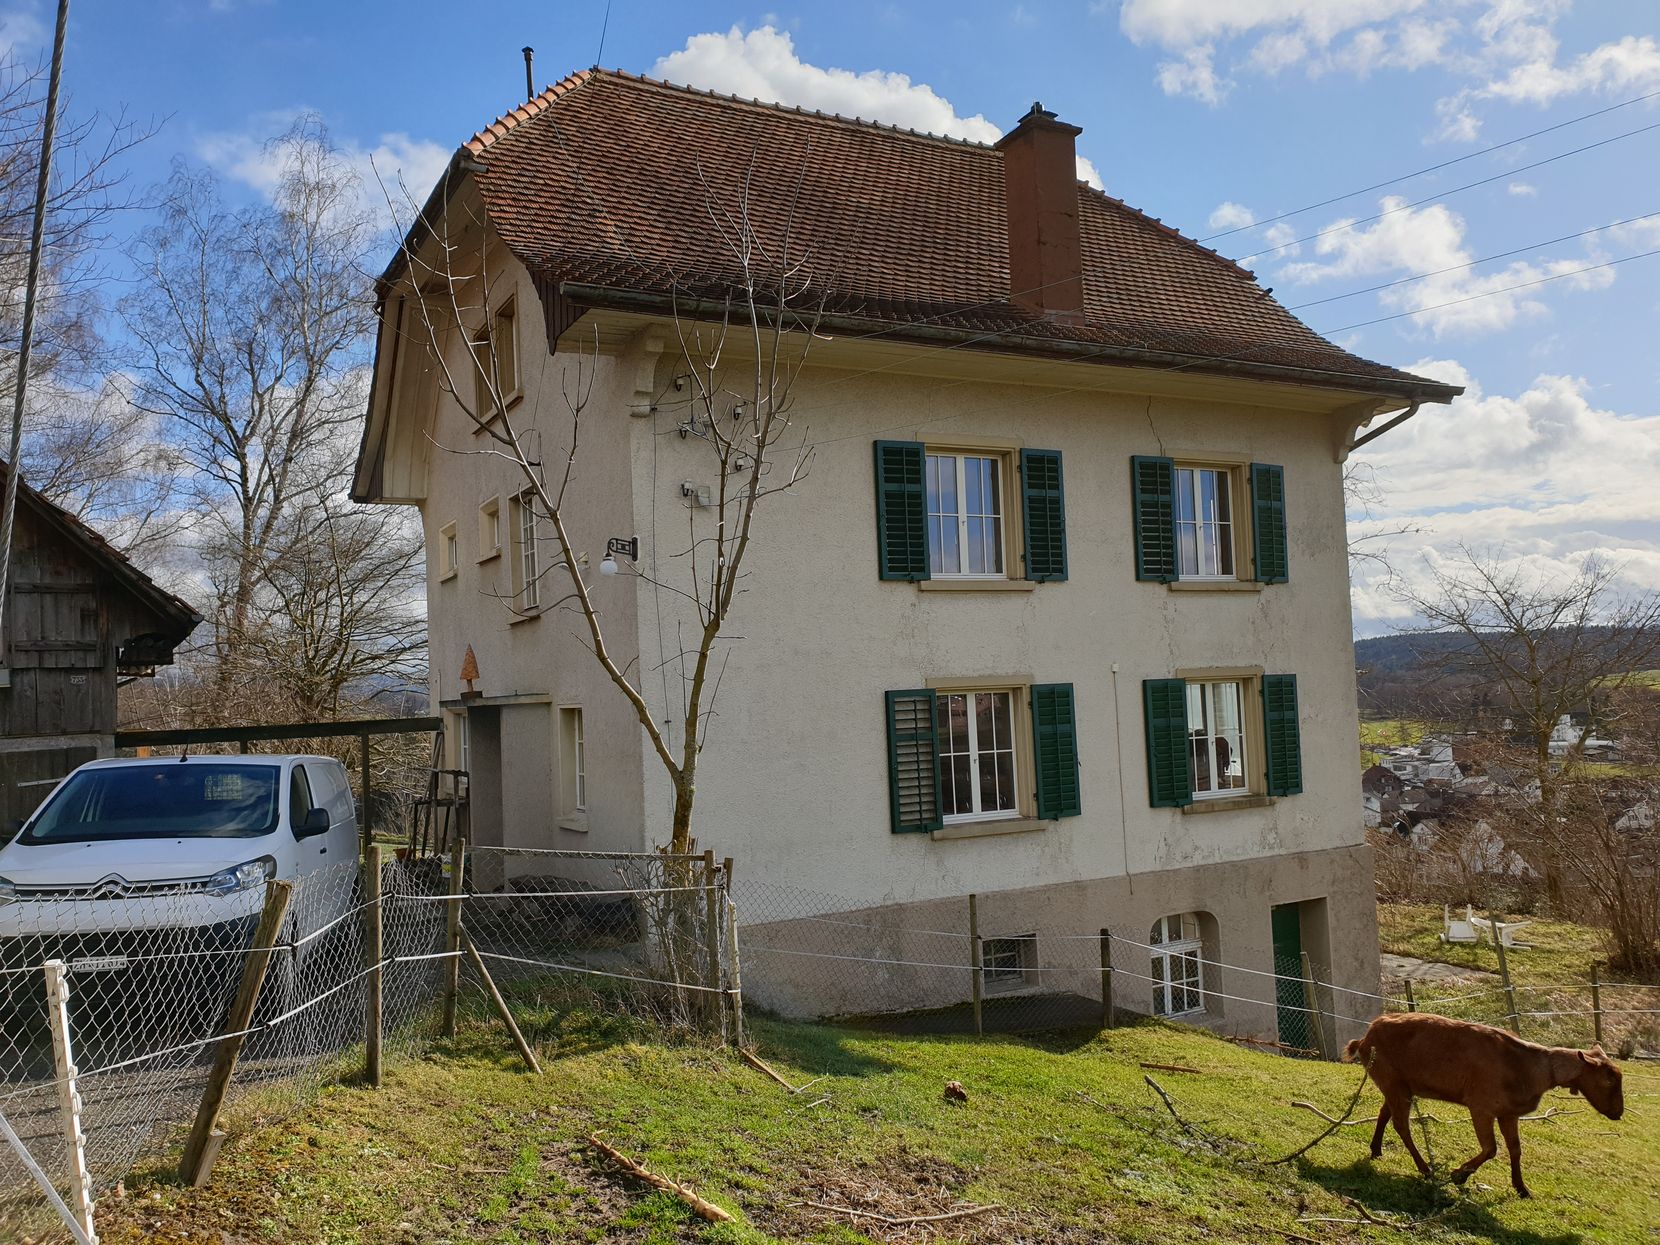 Blick auf das Haus Horn in Illnau Effretikon, vor dem eine Ziege weidet.